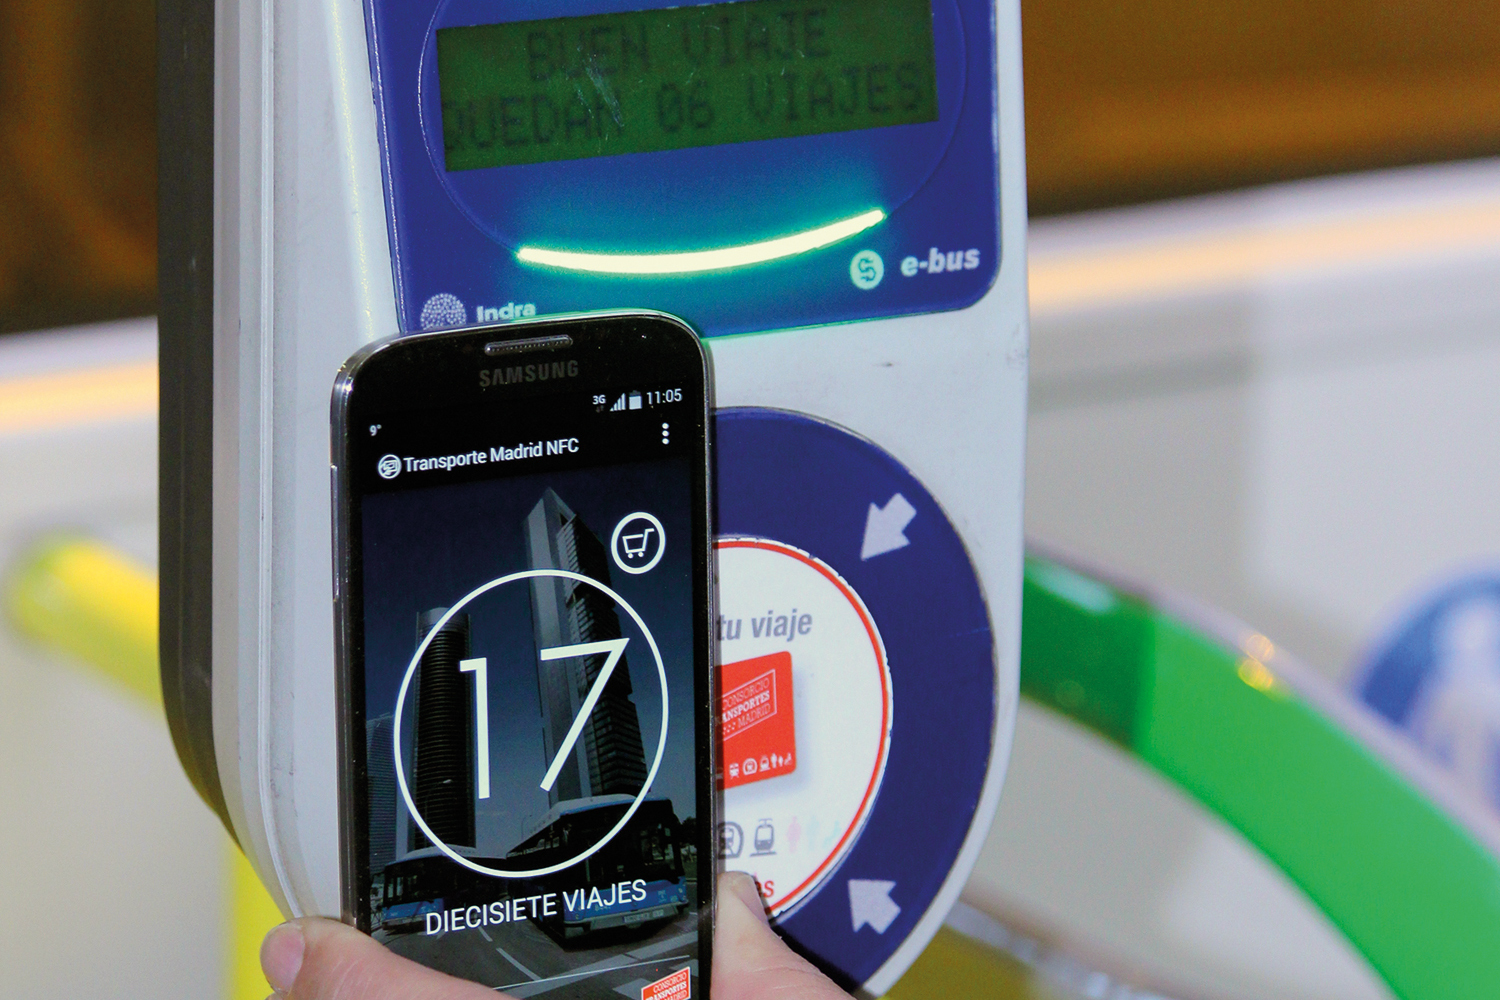 Santo esfuerzo Viento fuerte Tecnología NFC: sistema de acceso para el transporte público en Madrid